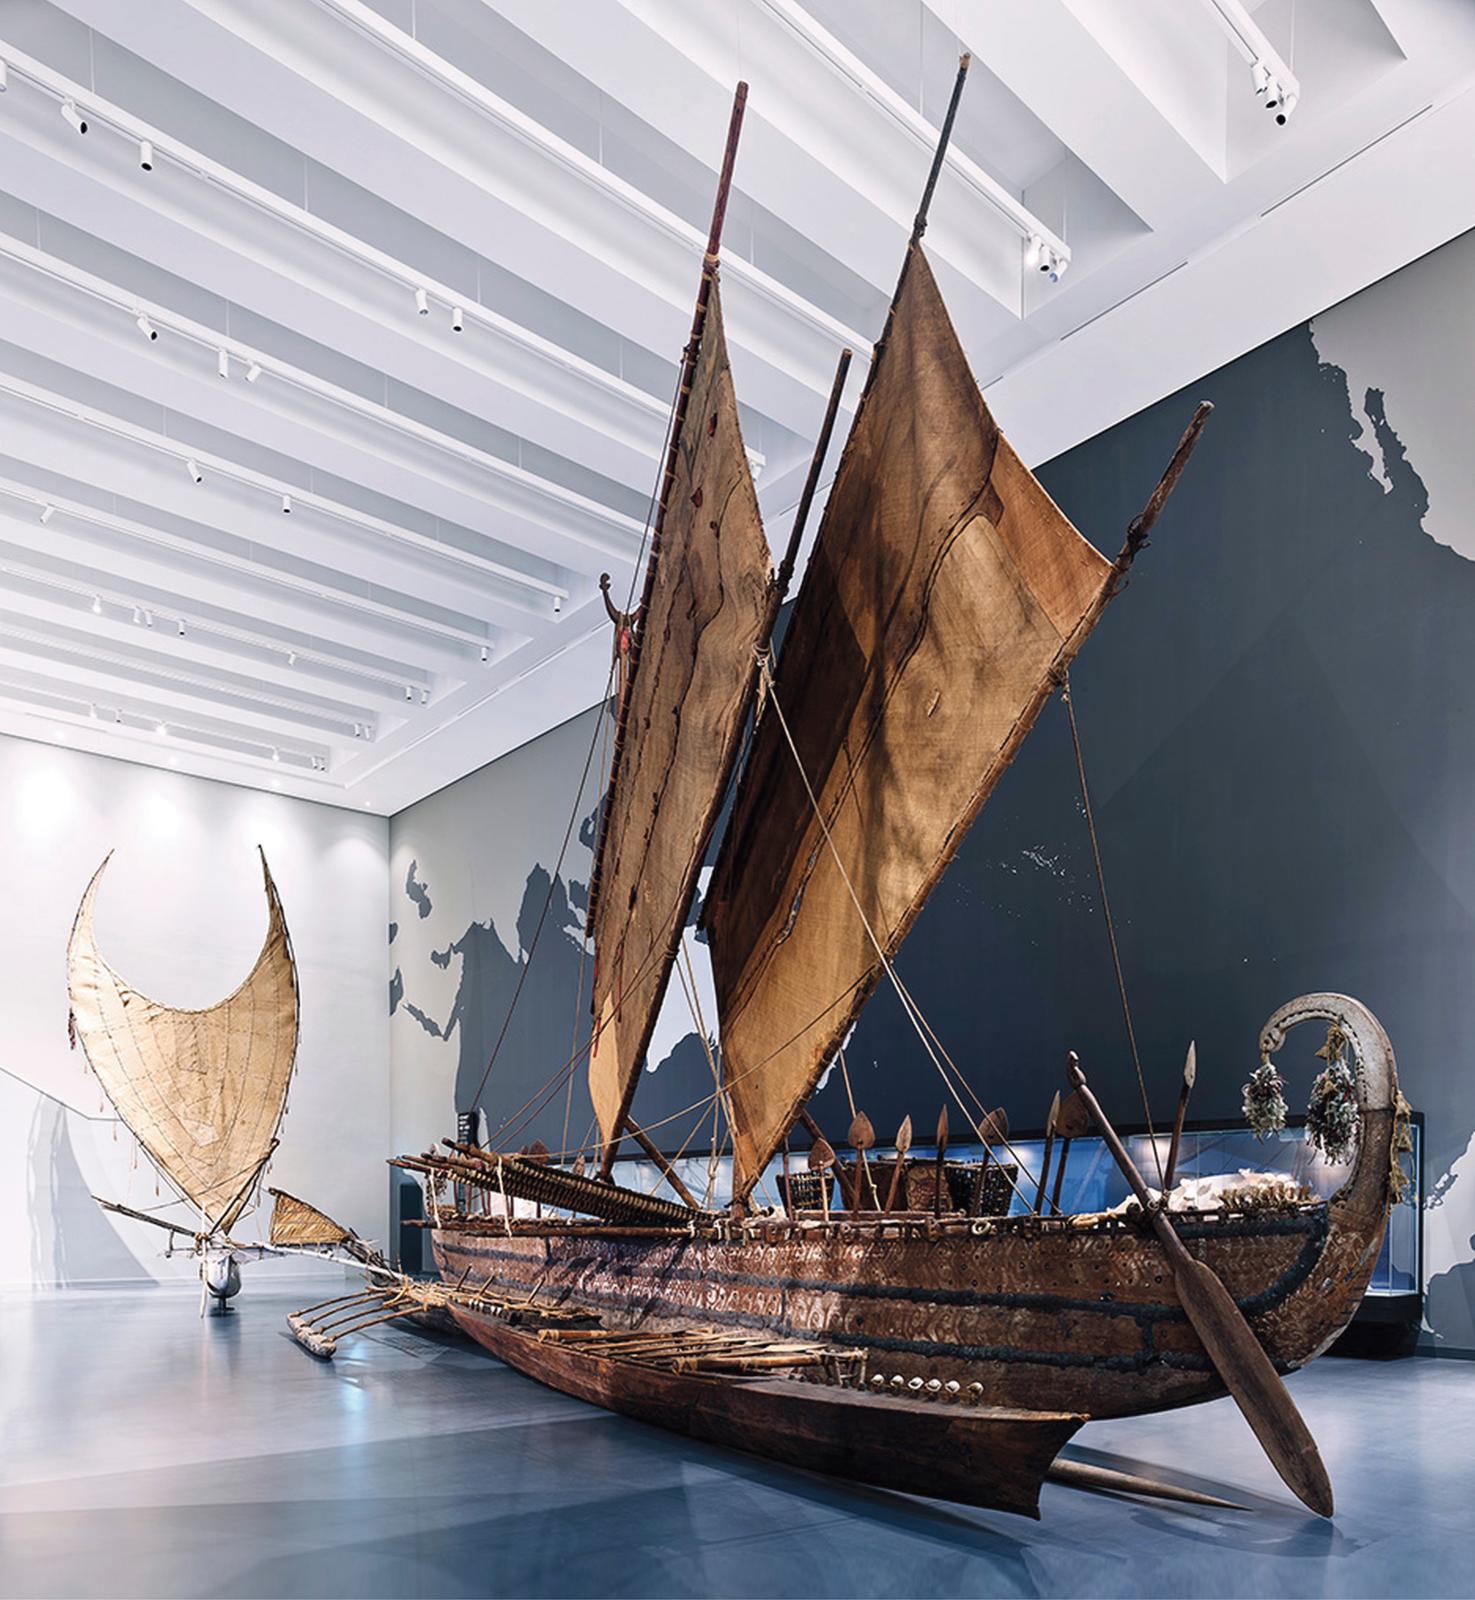 Papouasie-Nouvelle-Guinée, bateau à balancier de l’île de Luf, archipel Bismarck. © Staatliche Museen zu Berlin / Stiftung Humboldt Forum 